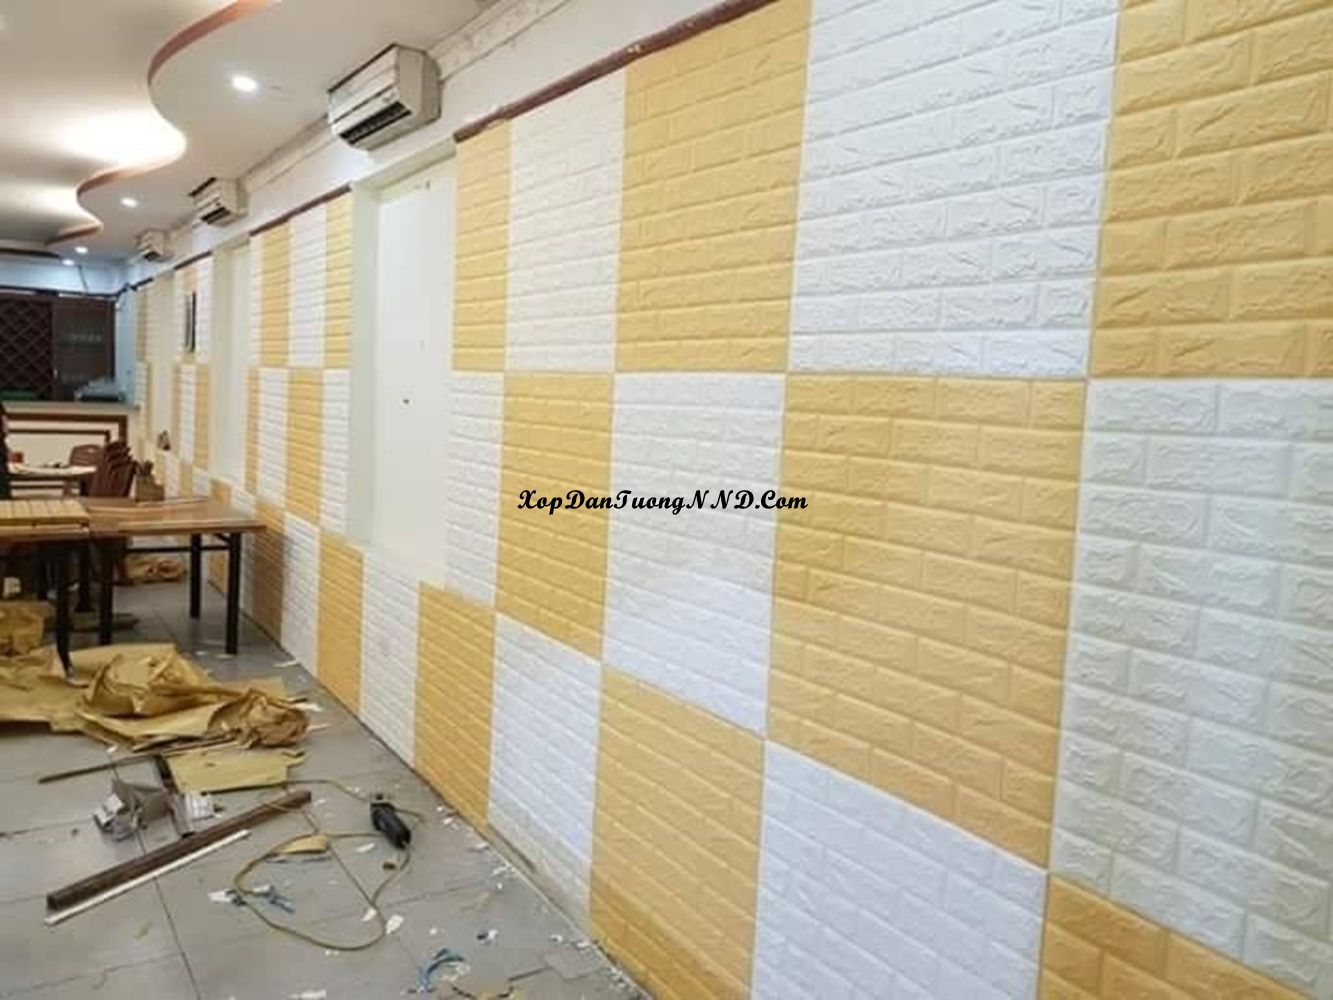 Xốp dán tường có độ bền cao hơn nhiều so với giấy dán tường